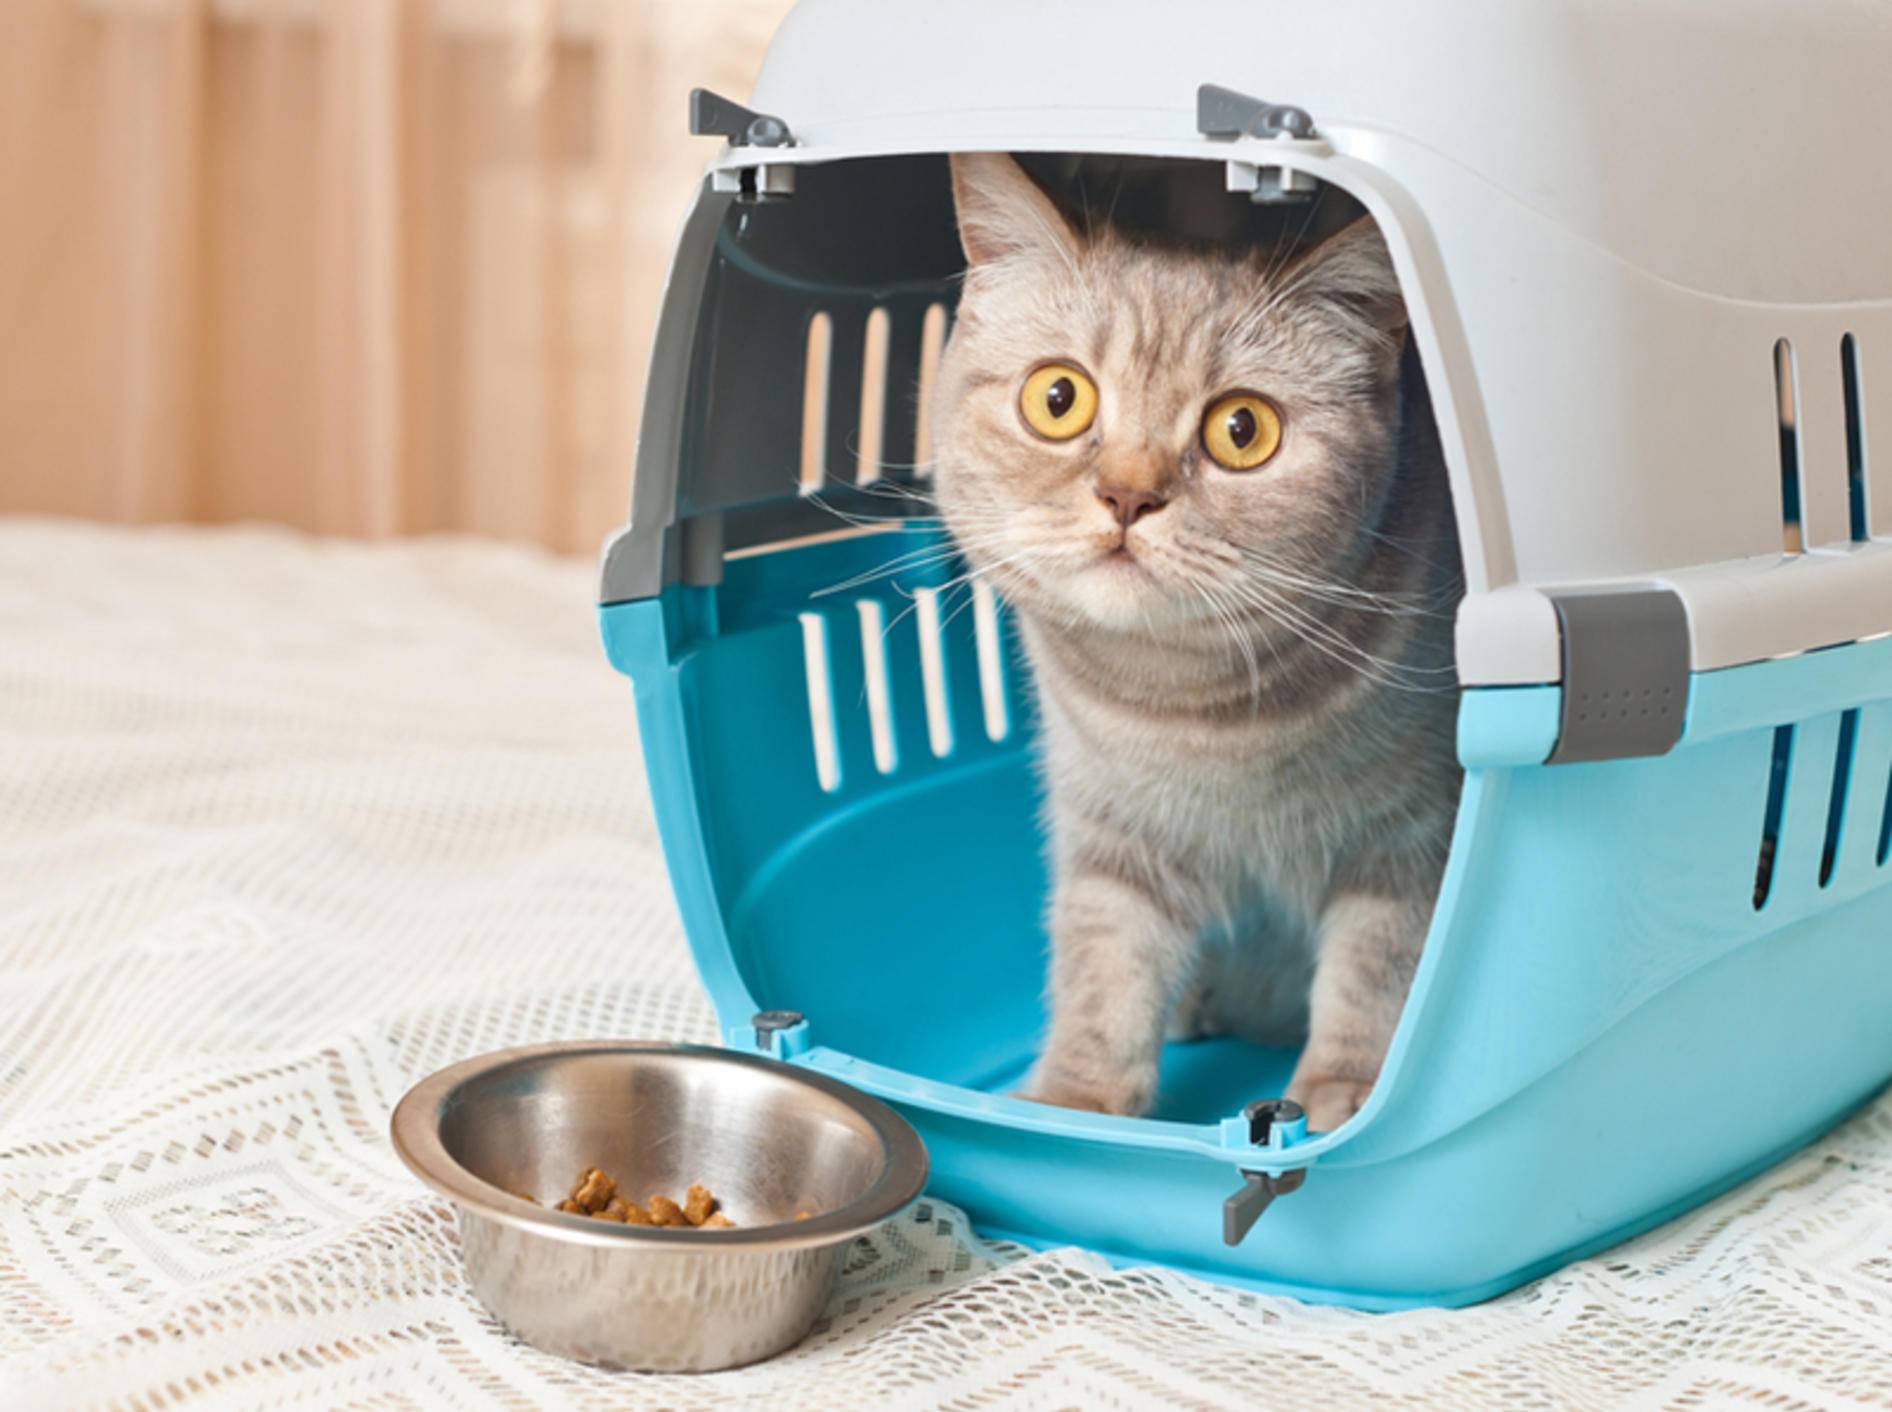 Die Urlaubsfrage: Transport zur Katzenpension oder doch lieber ein Katzensitter zu Hause? – Bild: Shutterstock / photo_master2000